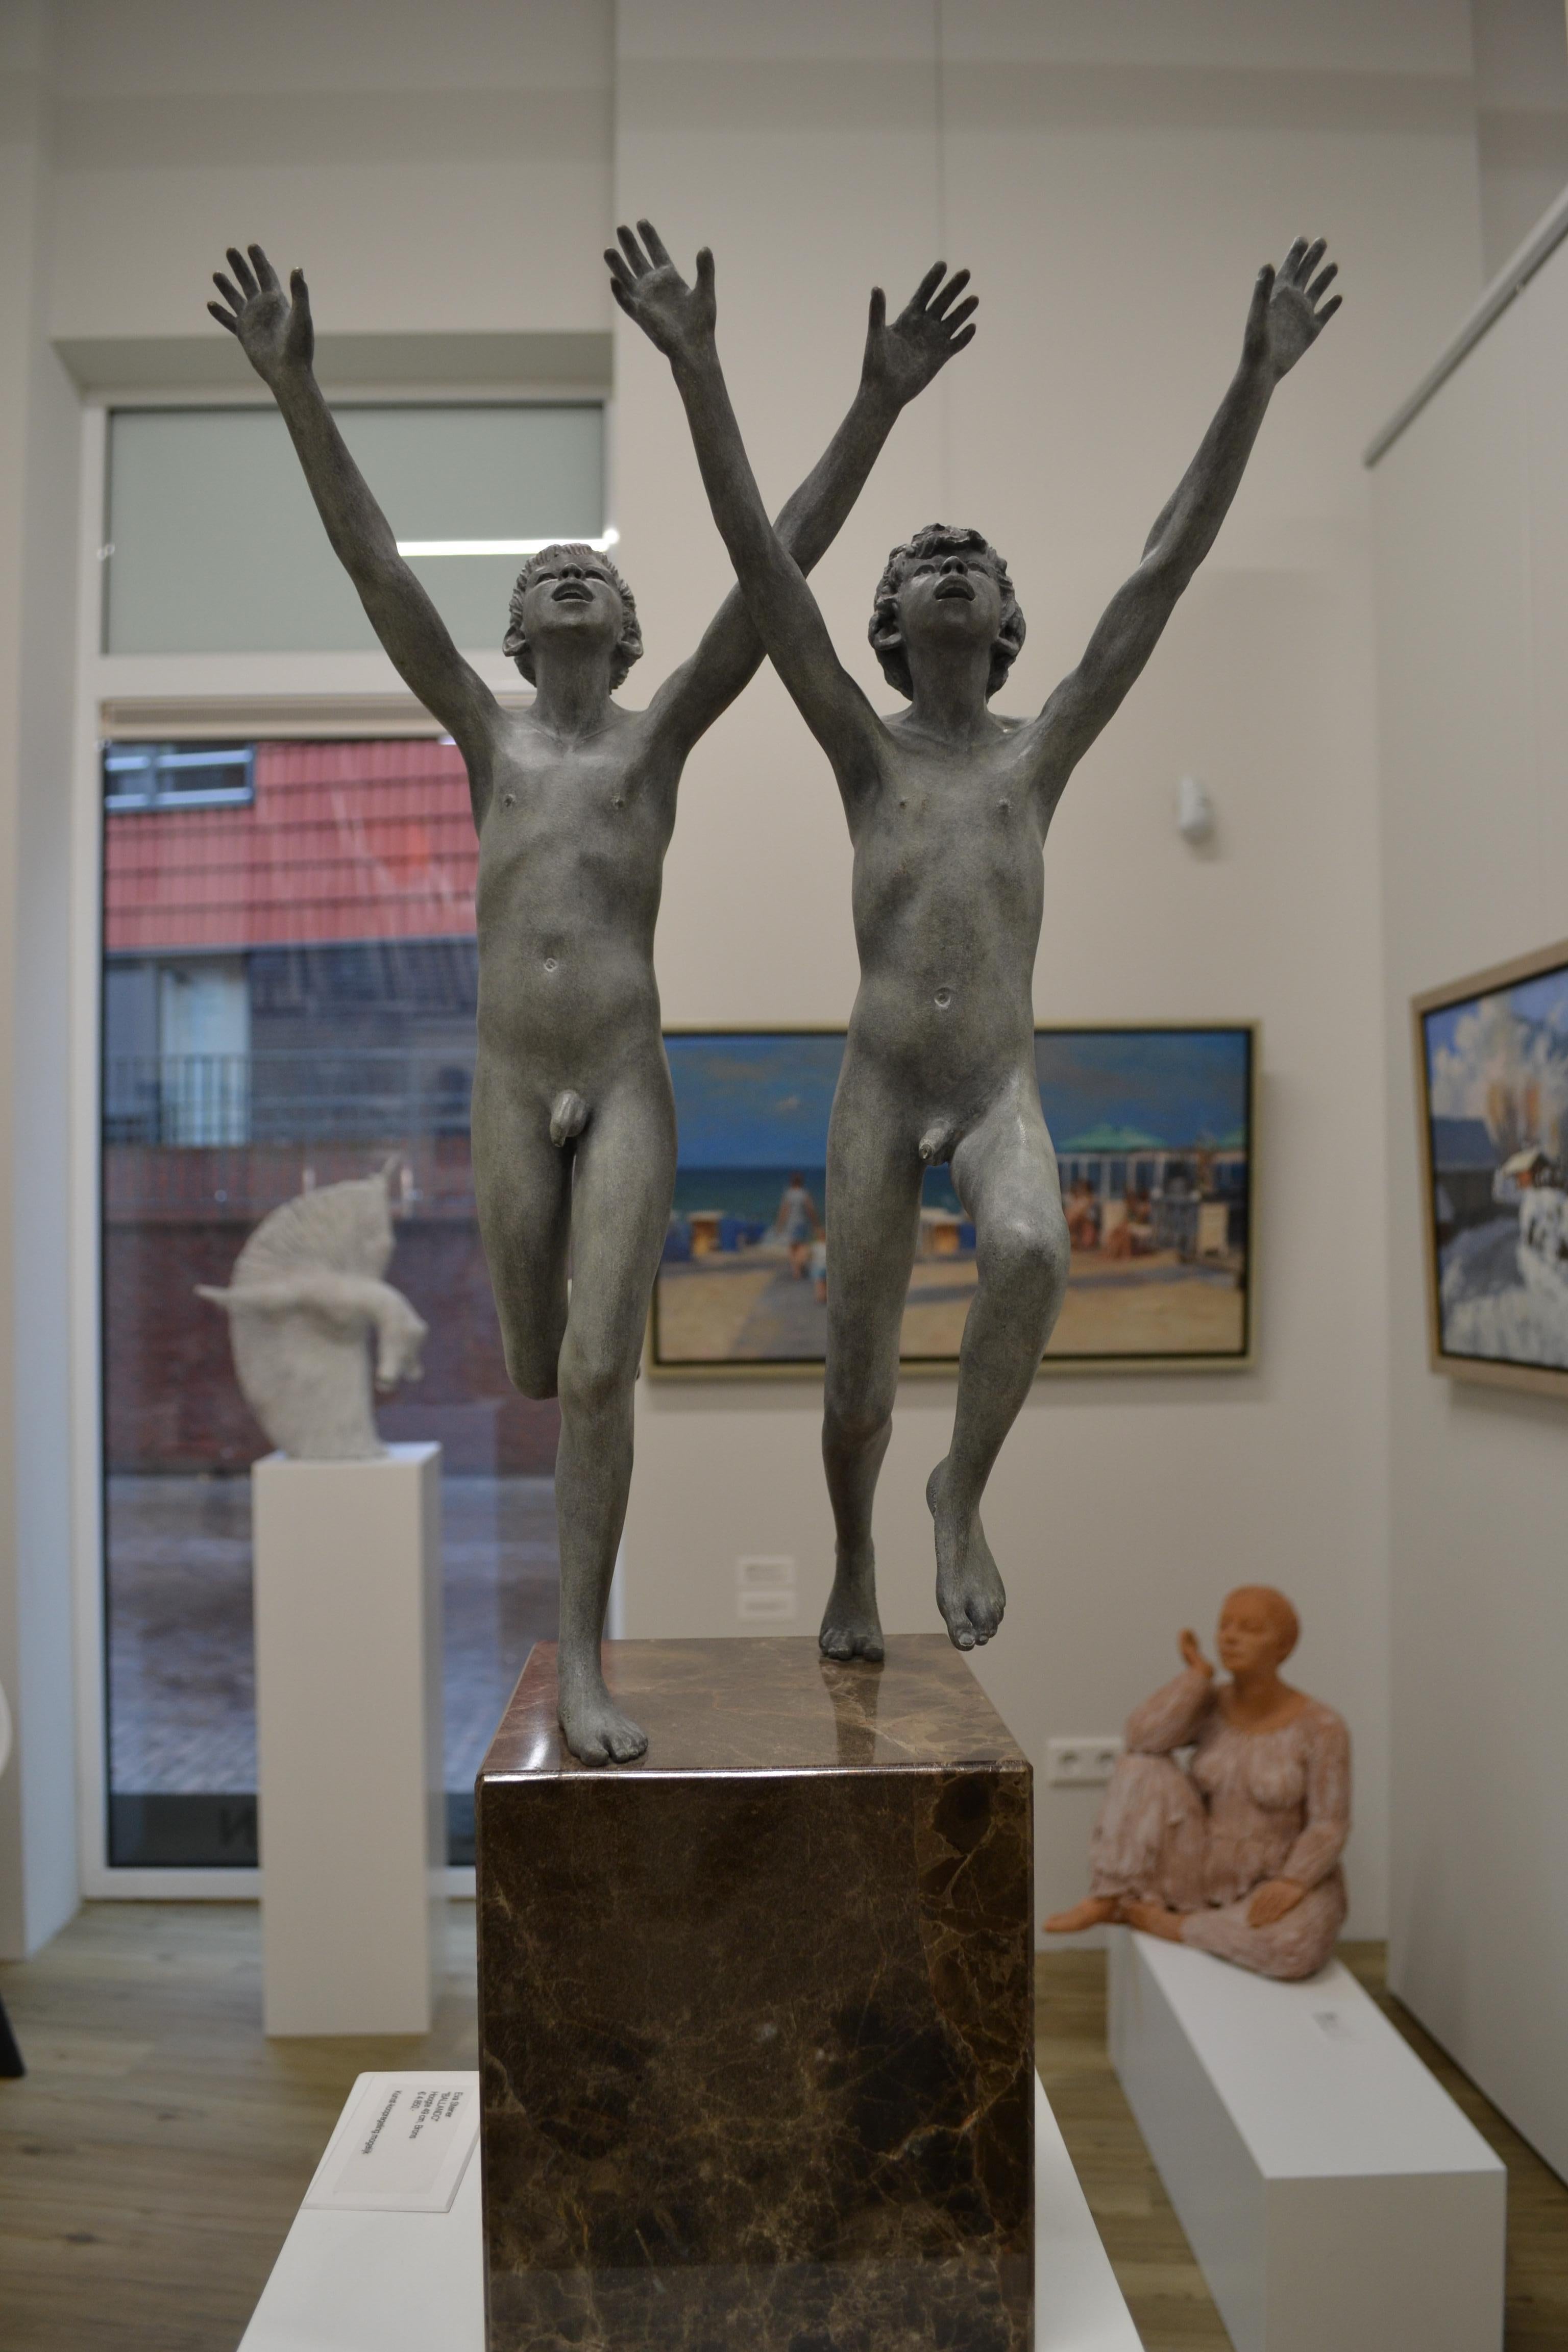 Diese schöne Bronzestatue steht auf einem Sockel aus Naturstein. Zusammen mit dem Sockel ist das Bild 80 cm hoch.
Die Jungen ohne Sockel sind 46 cm hoch. 
Die laufenden Jungen sind nackt und anatomisch perfekt stilisiert. Die Skulpturen von Wim van